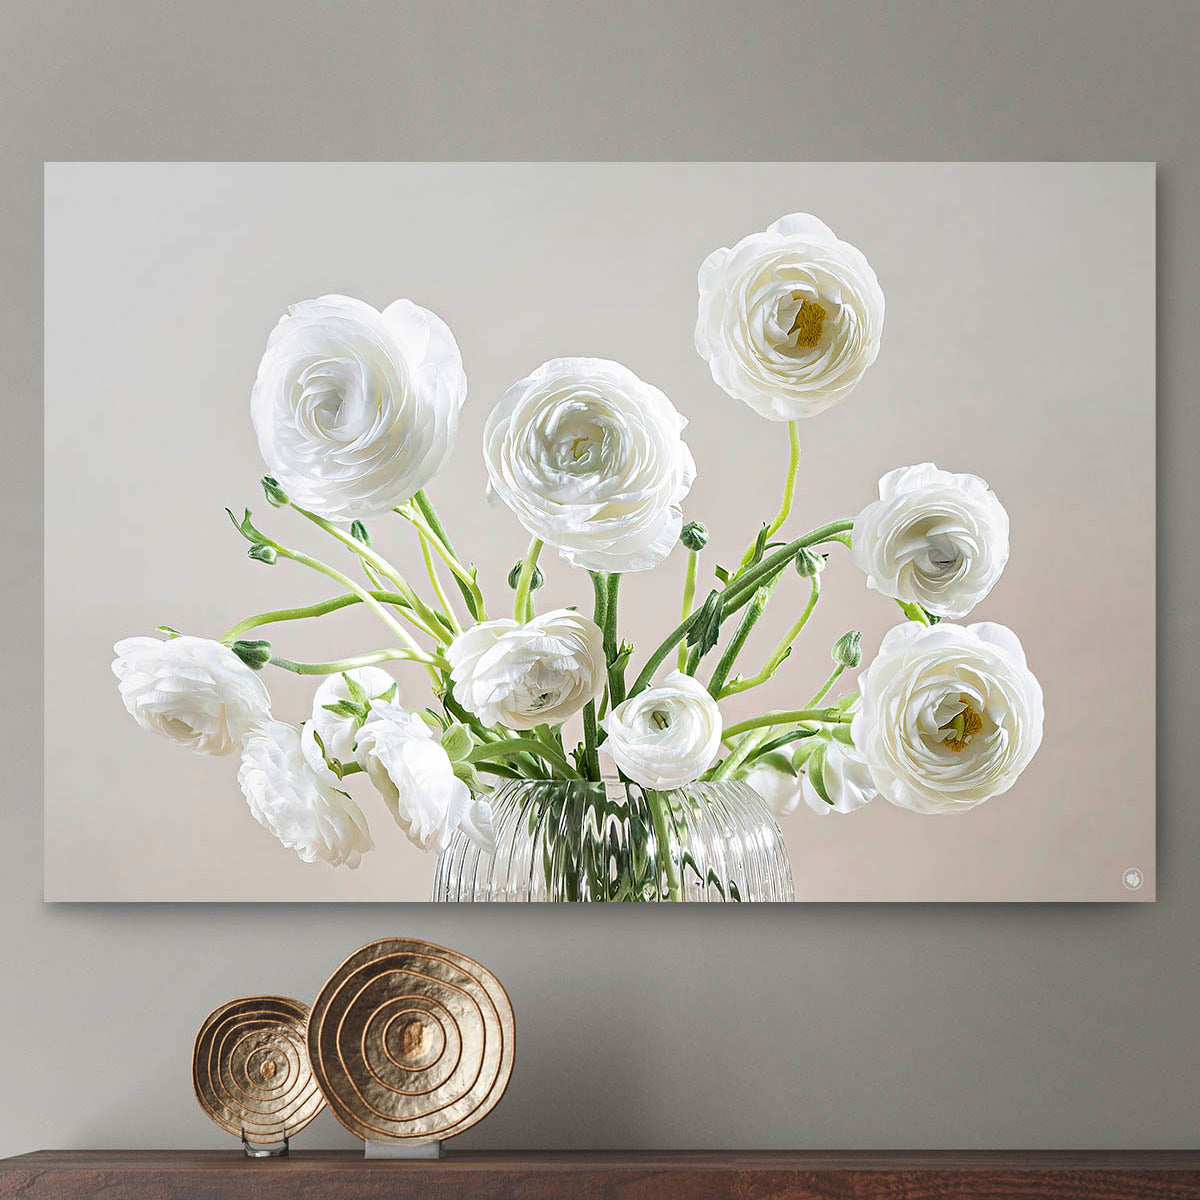 Schilderij met een glazen vaas met witte bloemen tegen een lichte muur